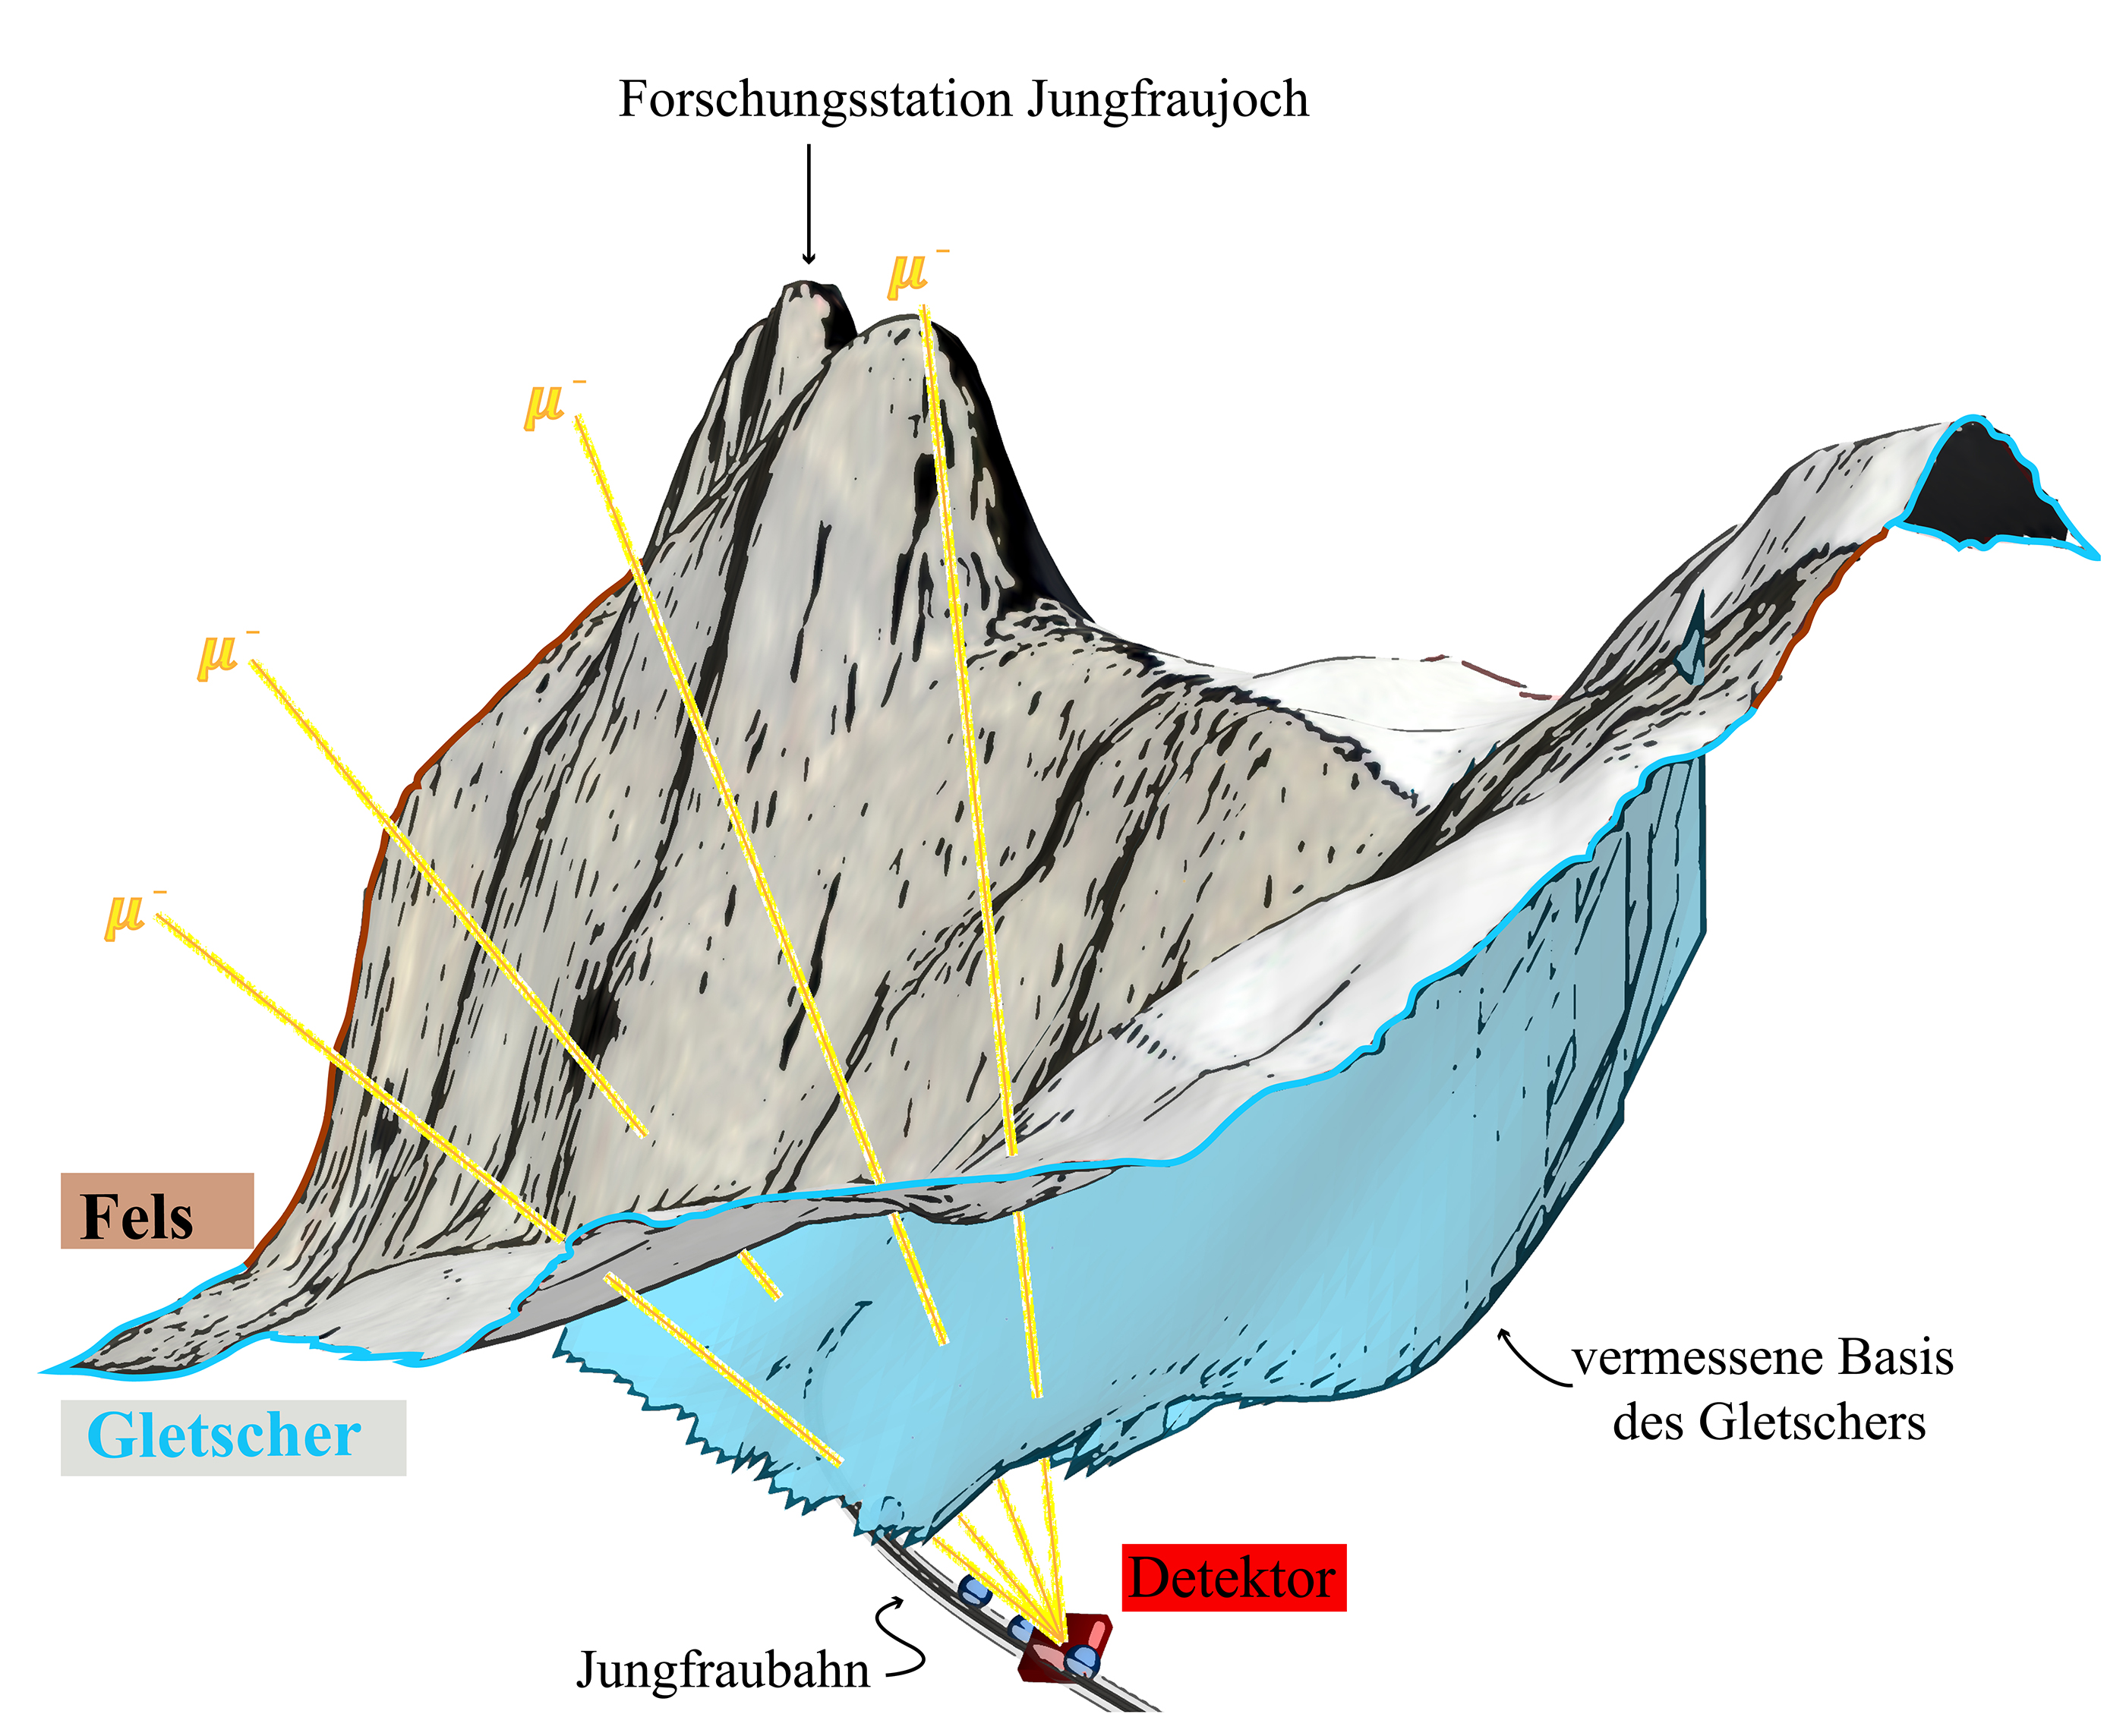 Muon radiography layout at Jungfraujoch